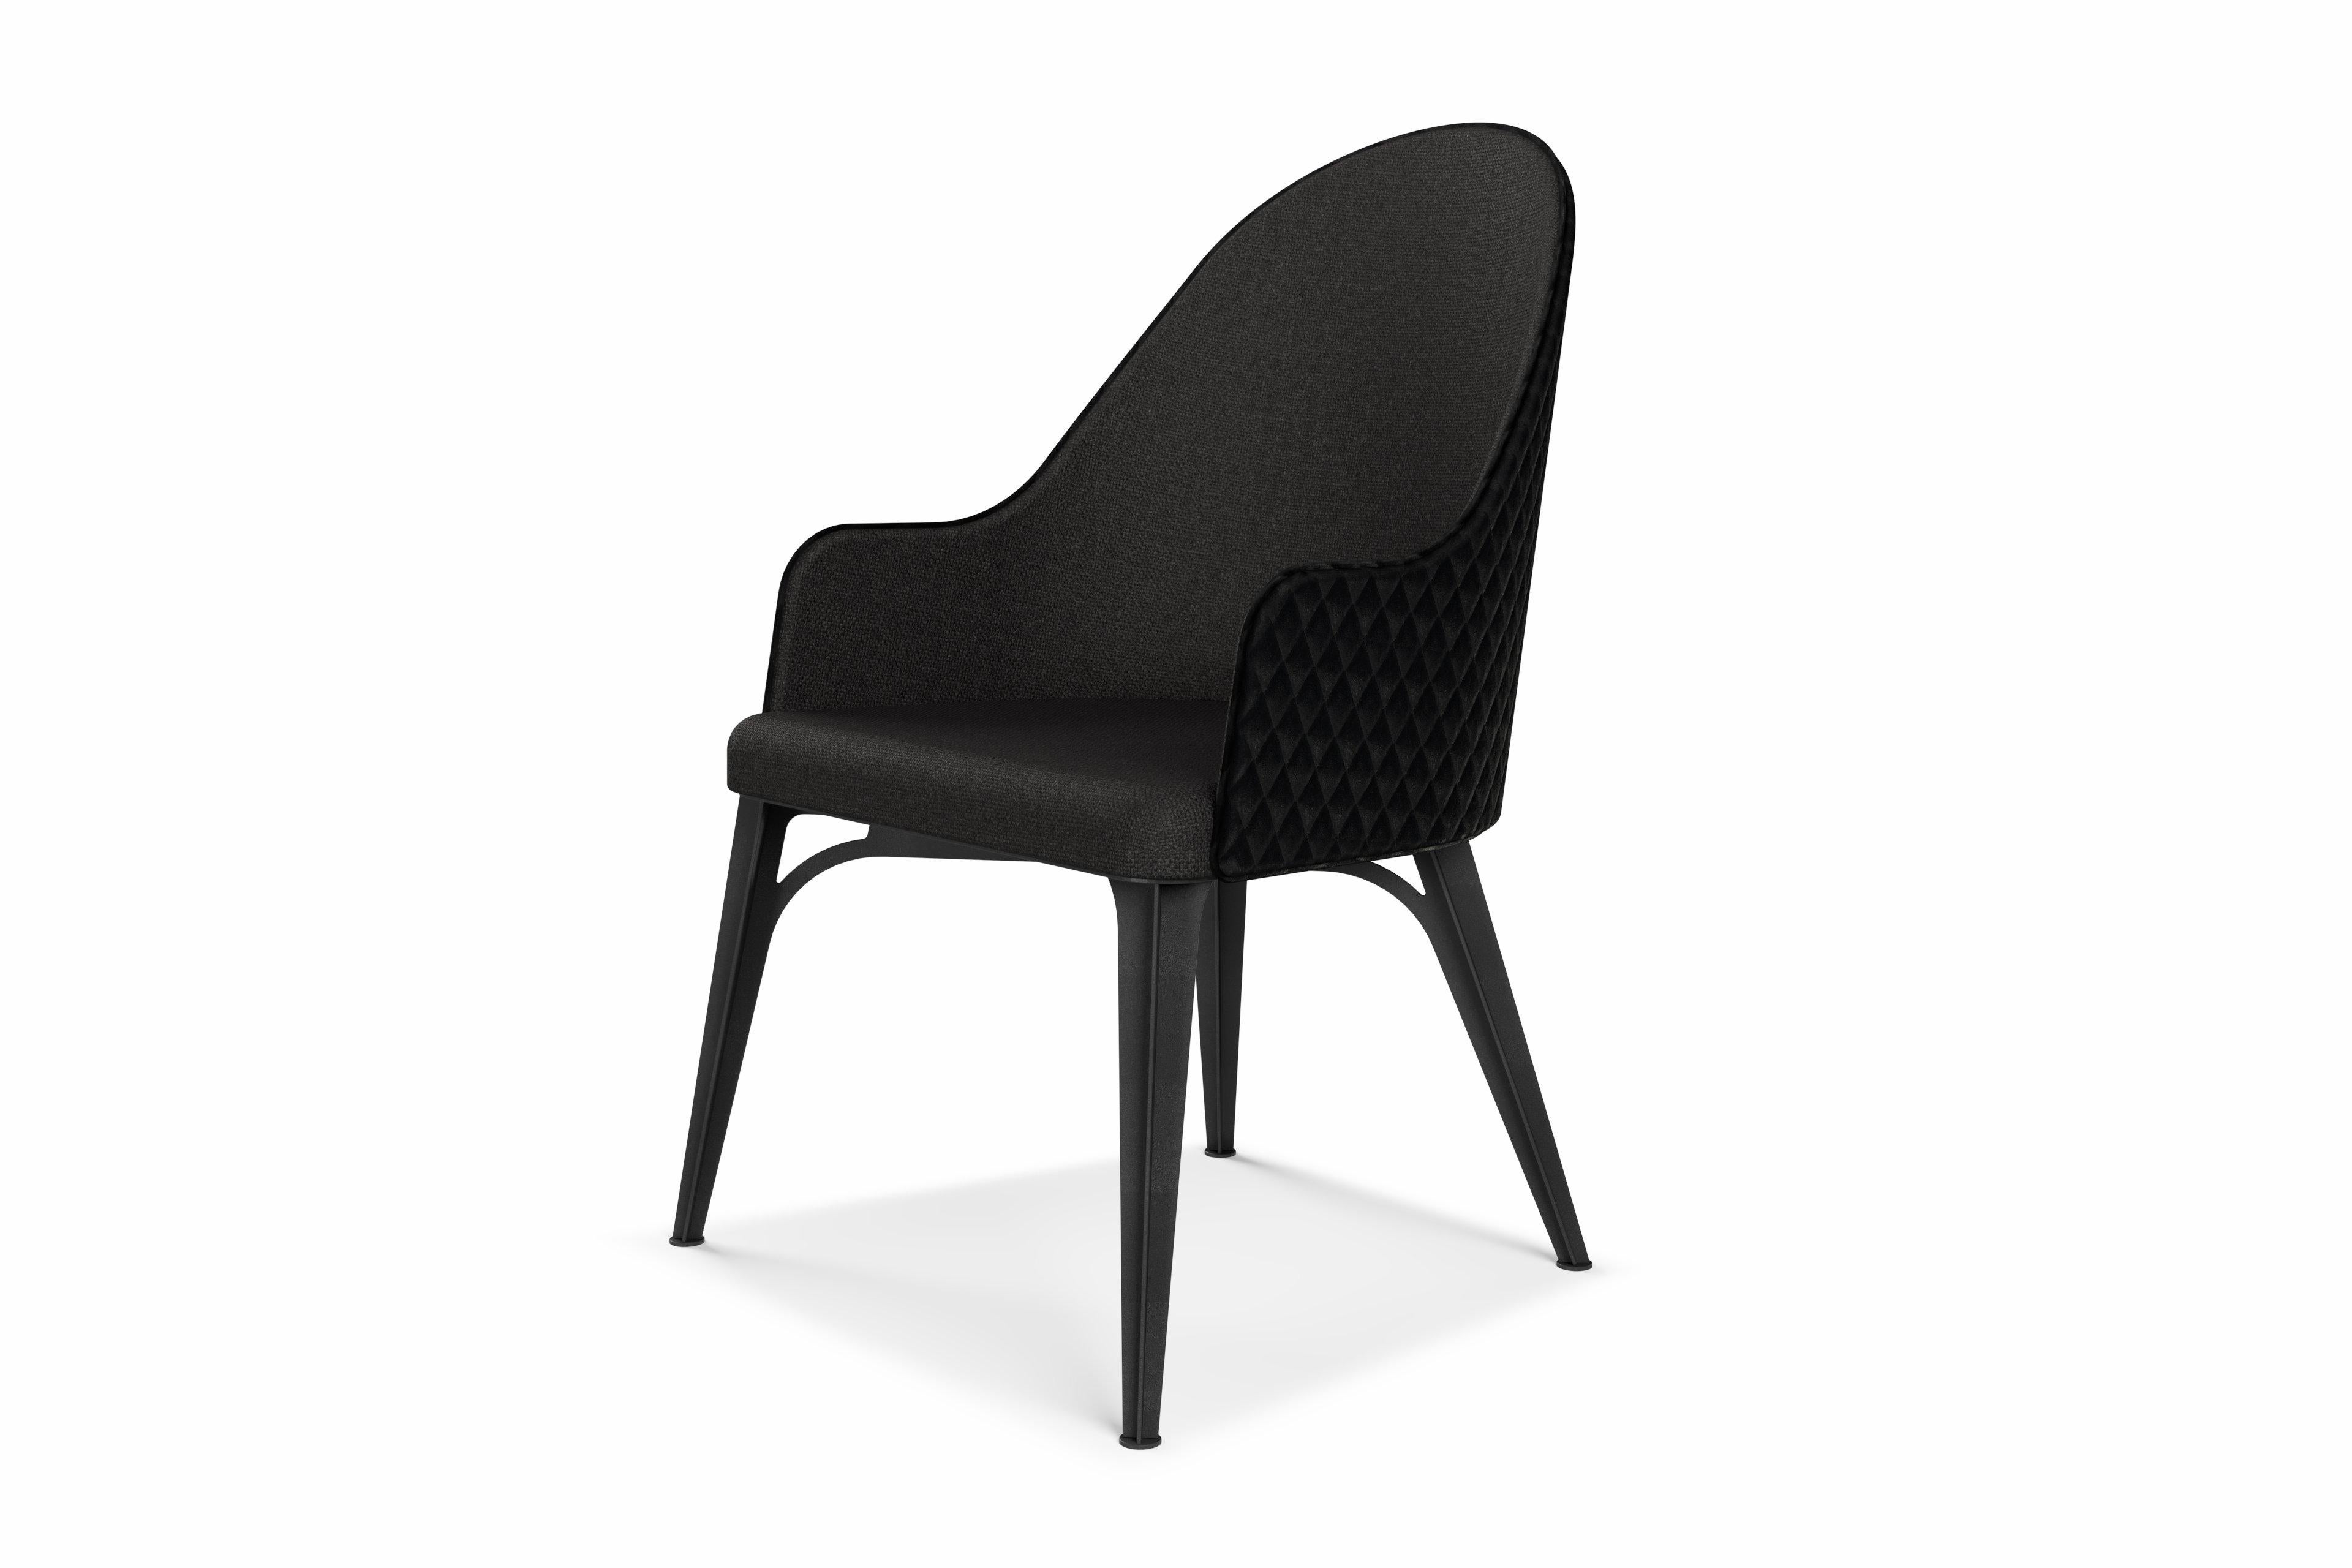 Der Luna-Stuhl bietet einfachen Luxus mit großzügigen Kurven.
Entworfen und hergestellt, um lange zu halten, mit pflegeleichten, komfortablen und schönen Eigenschaften.
Die Collection'S ist ab sofort in einer Auswahl von Farben und Strukturen